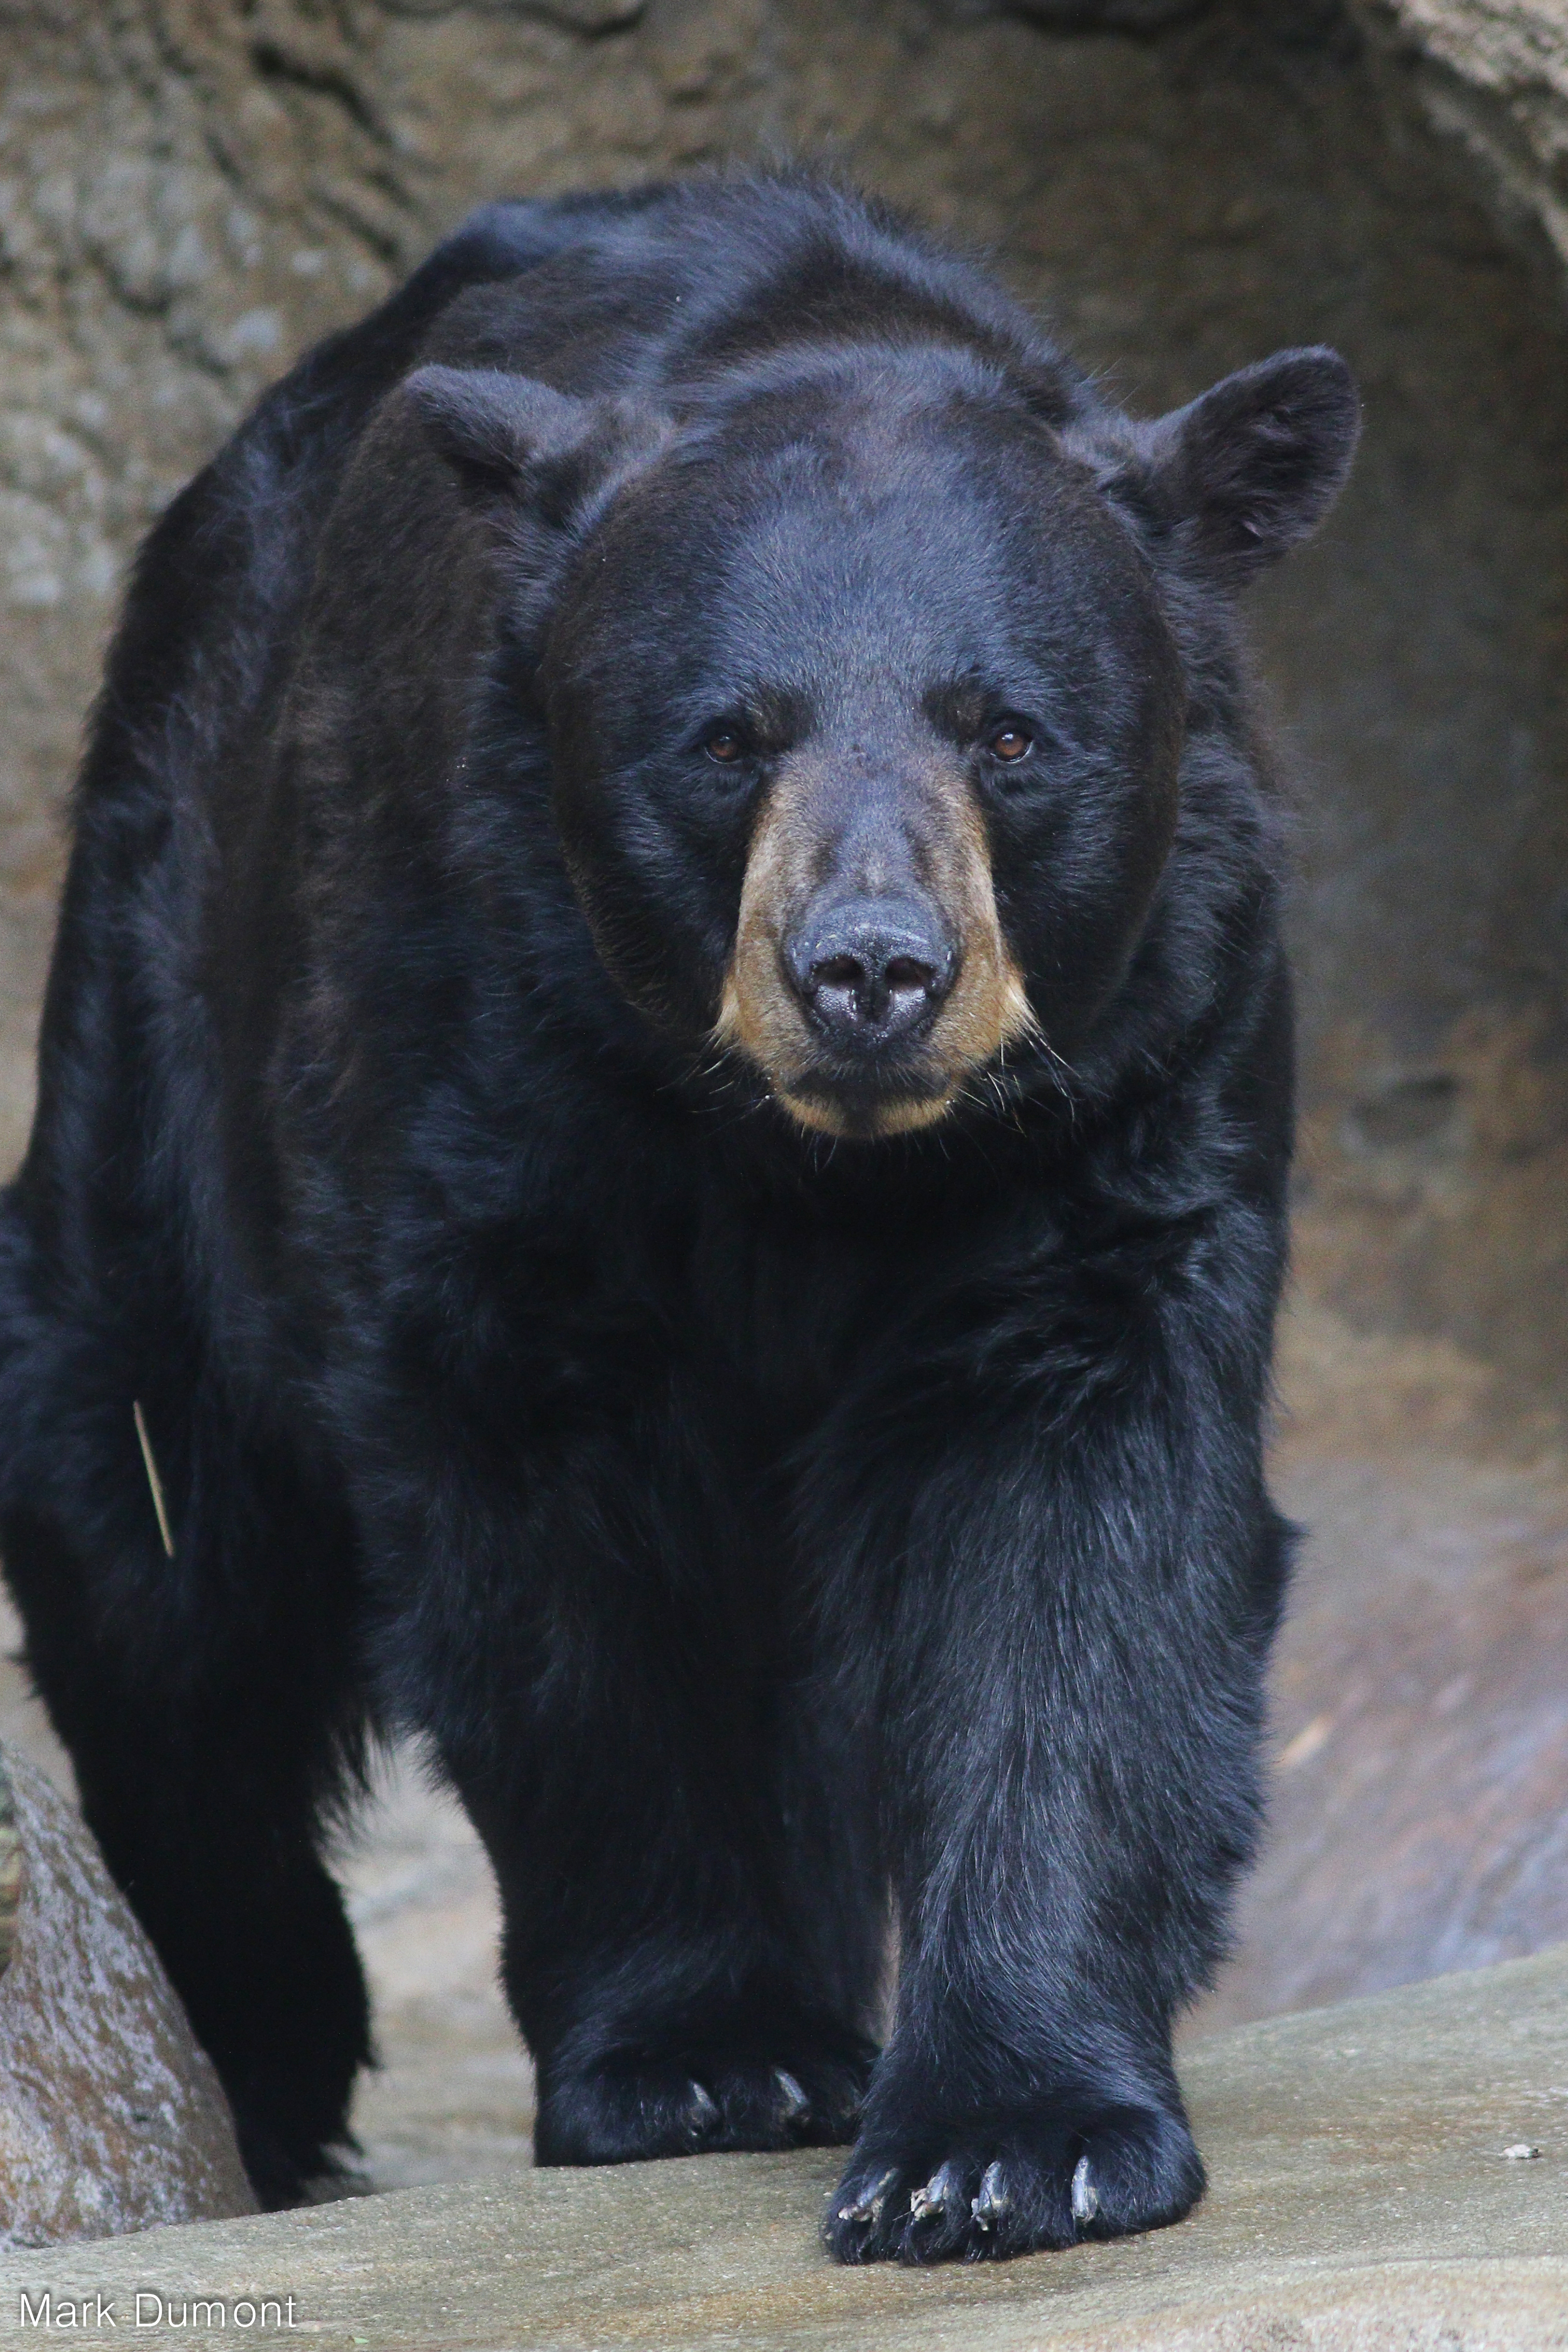 American Black Bear - The Cincinnati Zoo & Botanical Garden